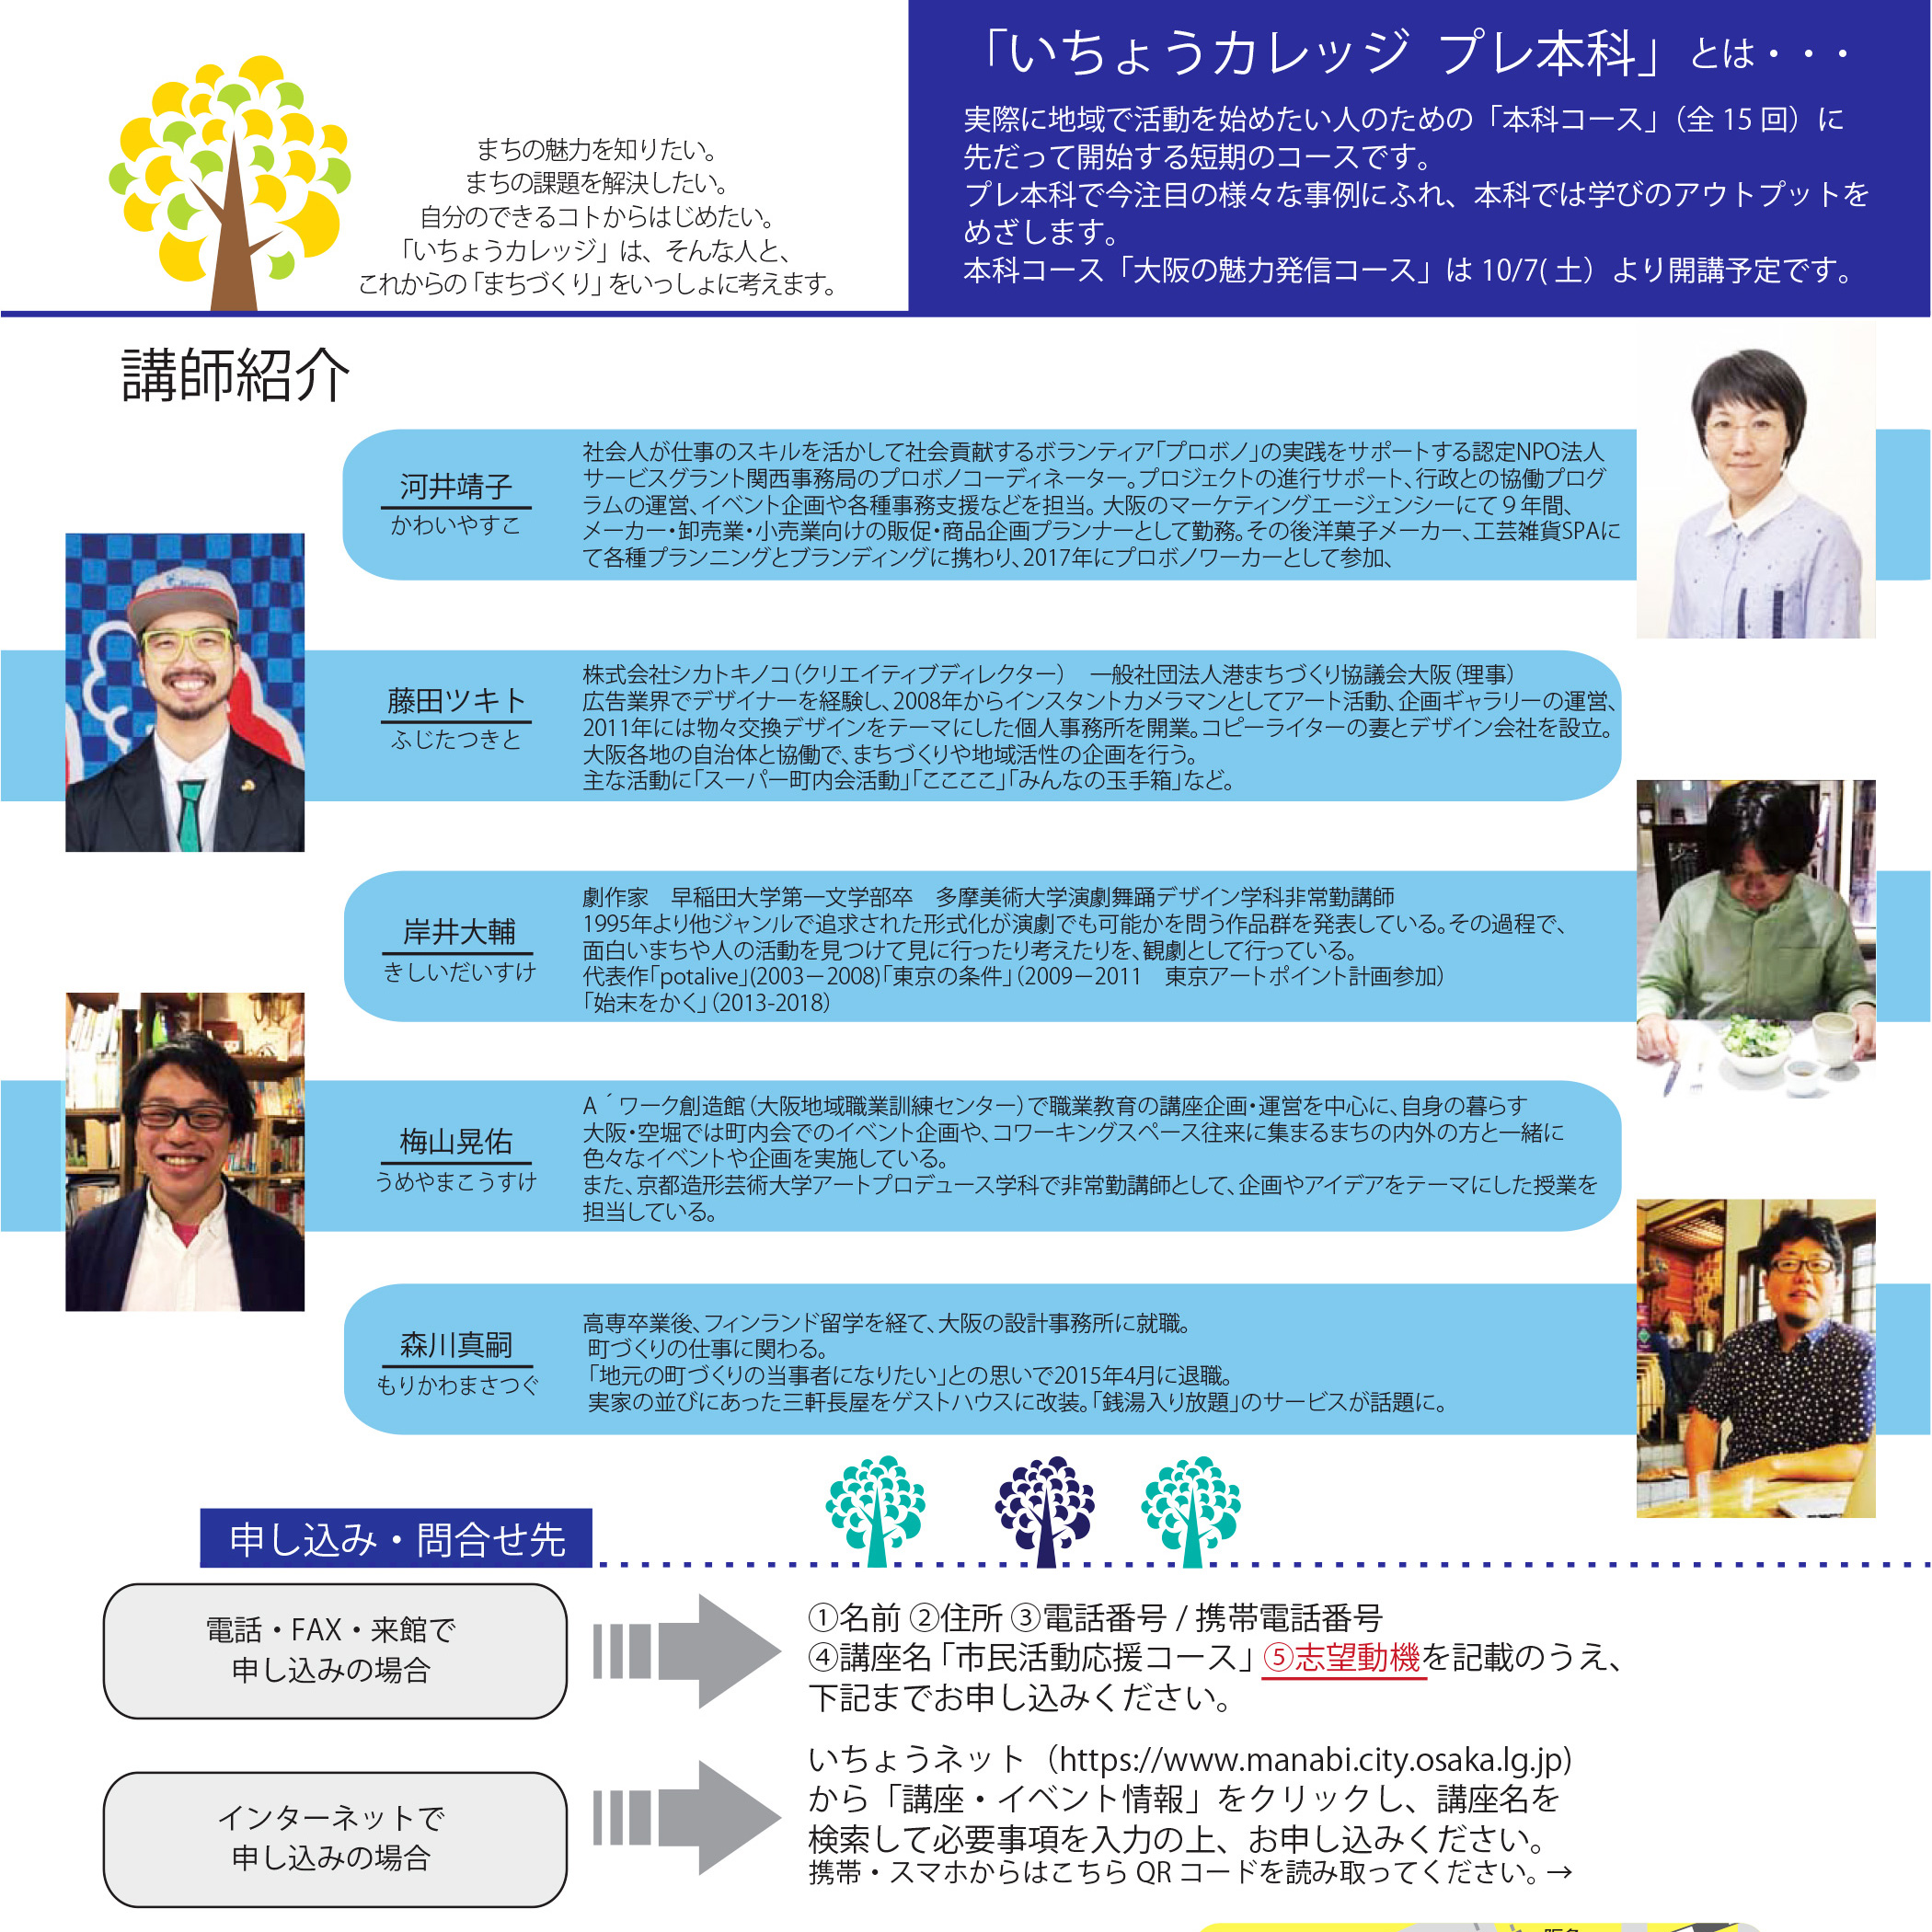 いちょうカレッジ（大阪市立総合生涯学習センター）9月13日講師・市民活動応援コース